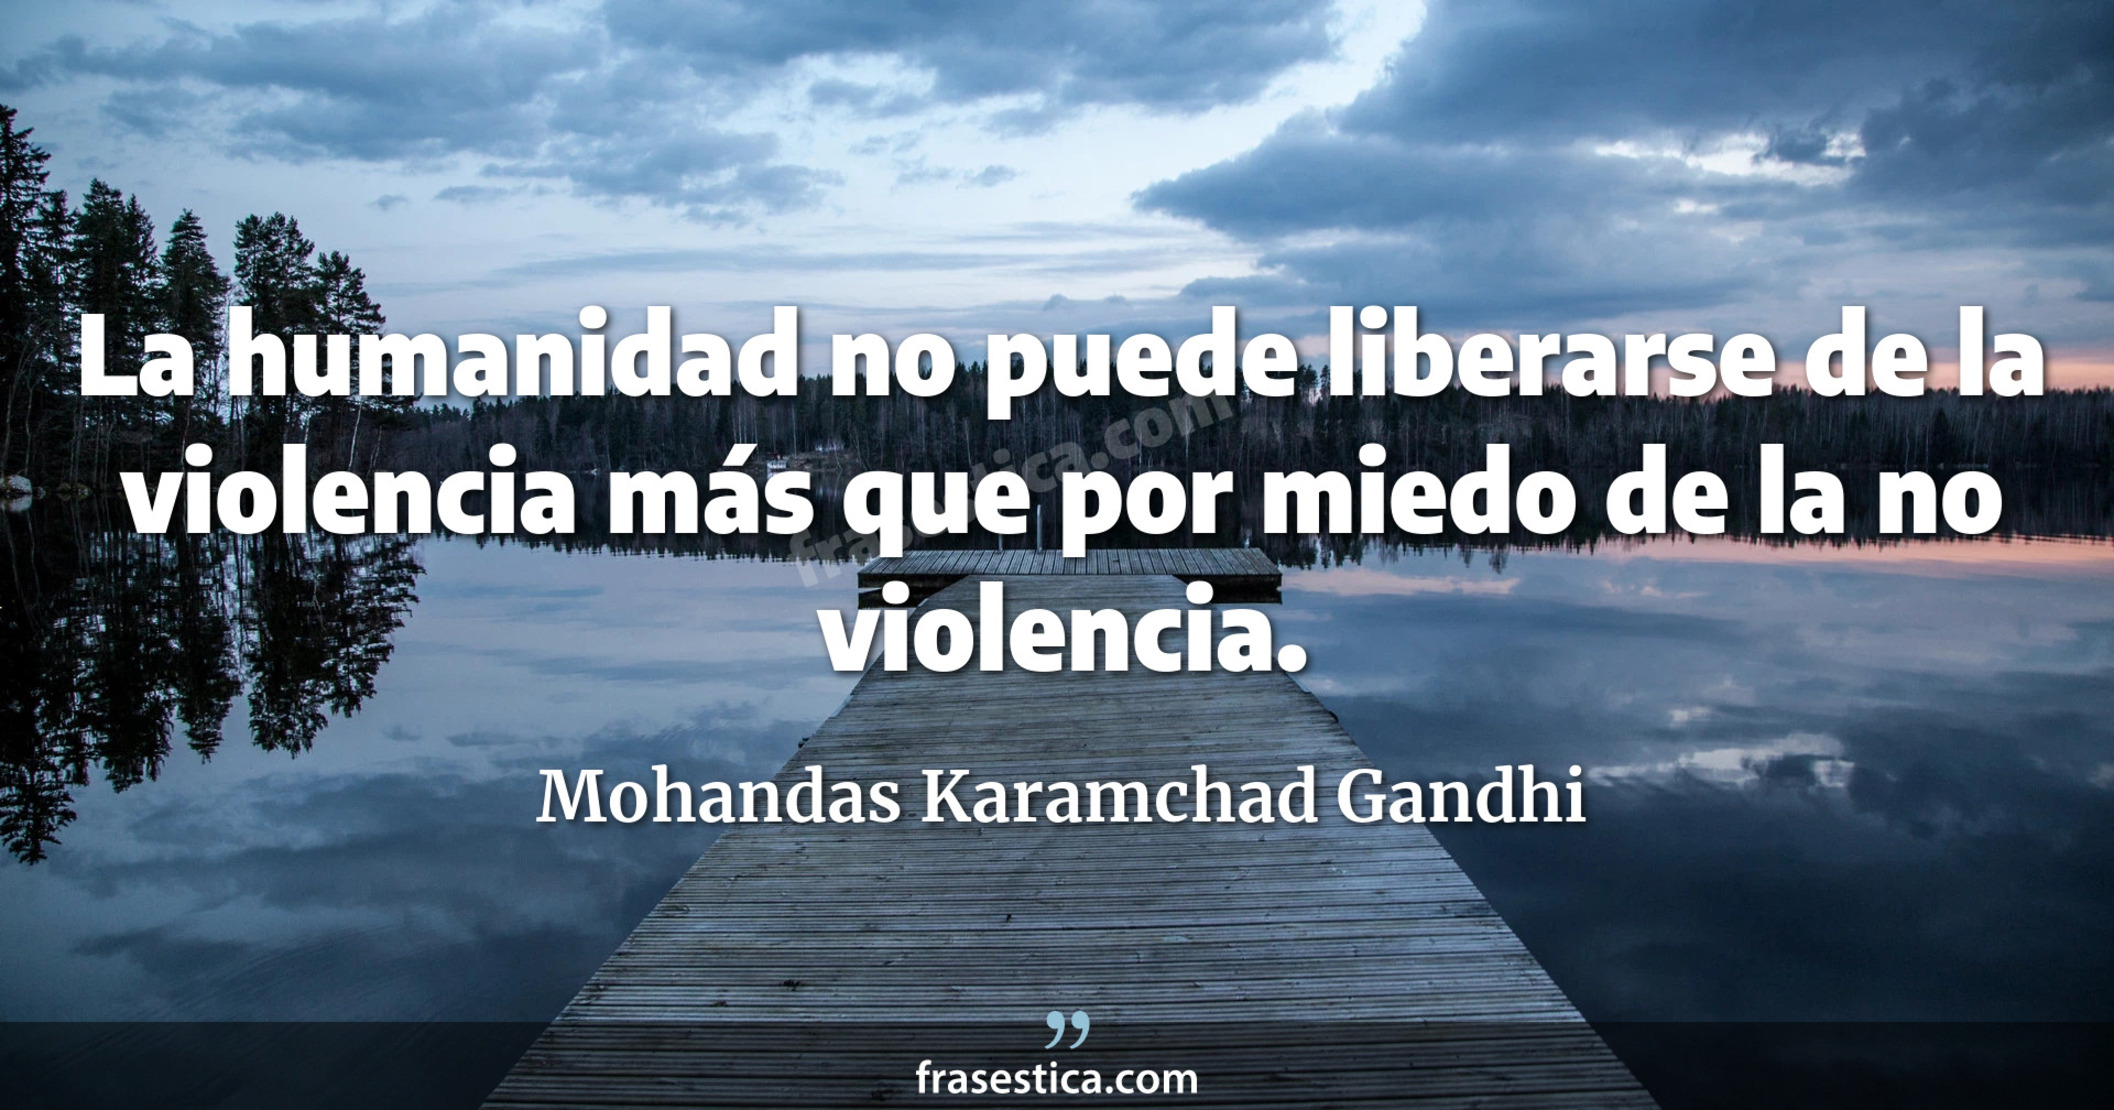 La humanidad no puede liberarse de la violencia más que por miedo de la no violencia. - Mohandas Karamchad Gandhi